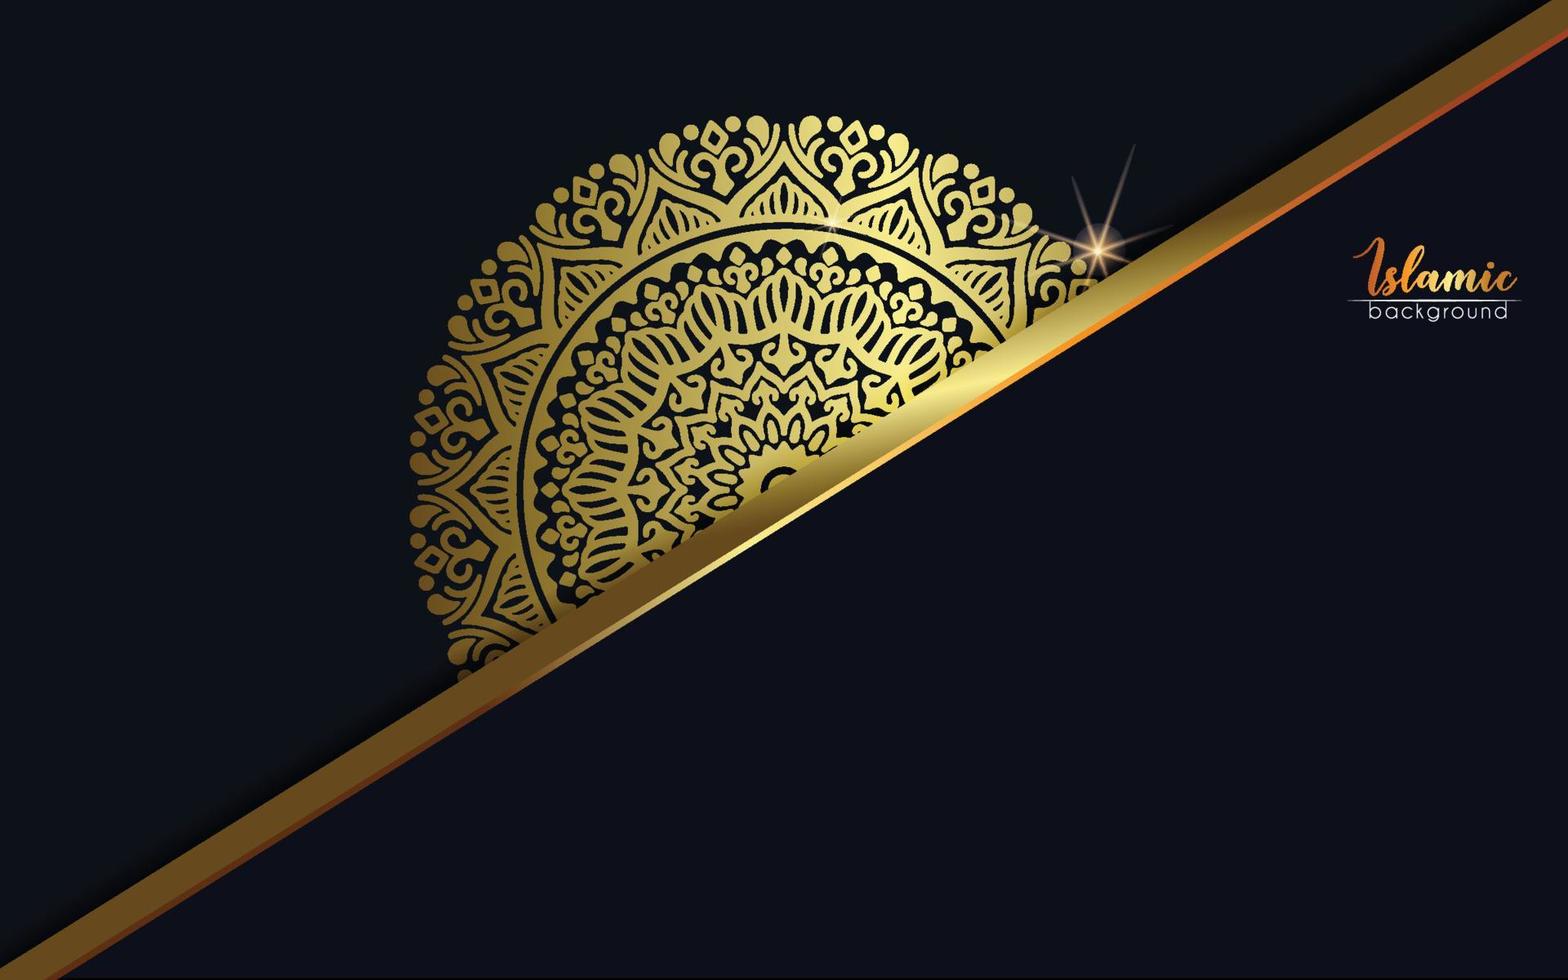 Fondo de mandala ornamental de lujo con estilo de patrón oriental islámico árabe vector premium vecto